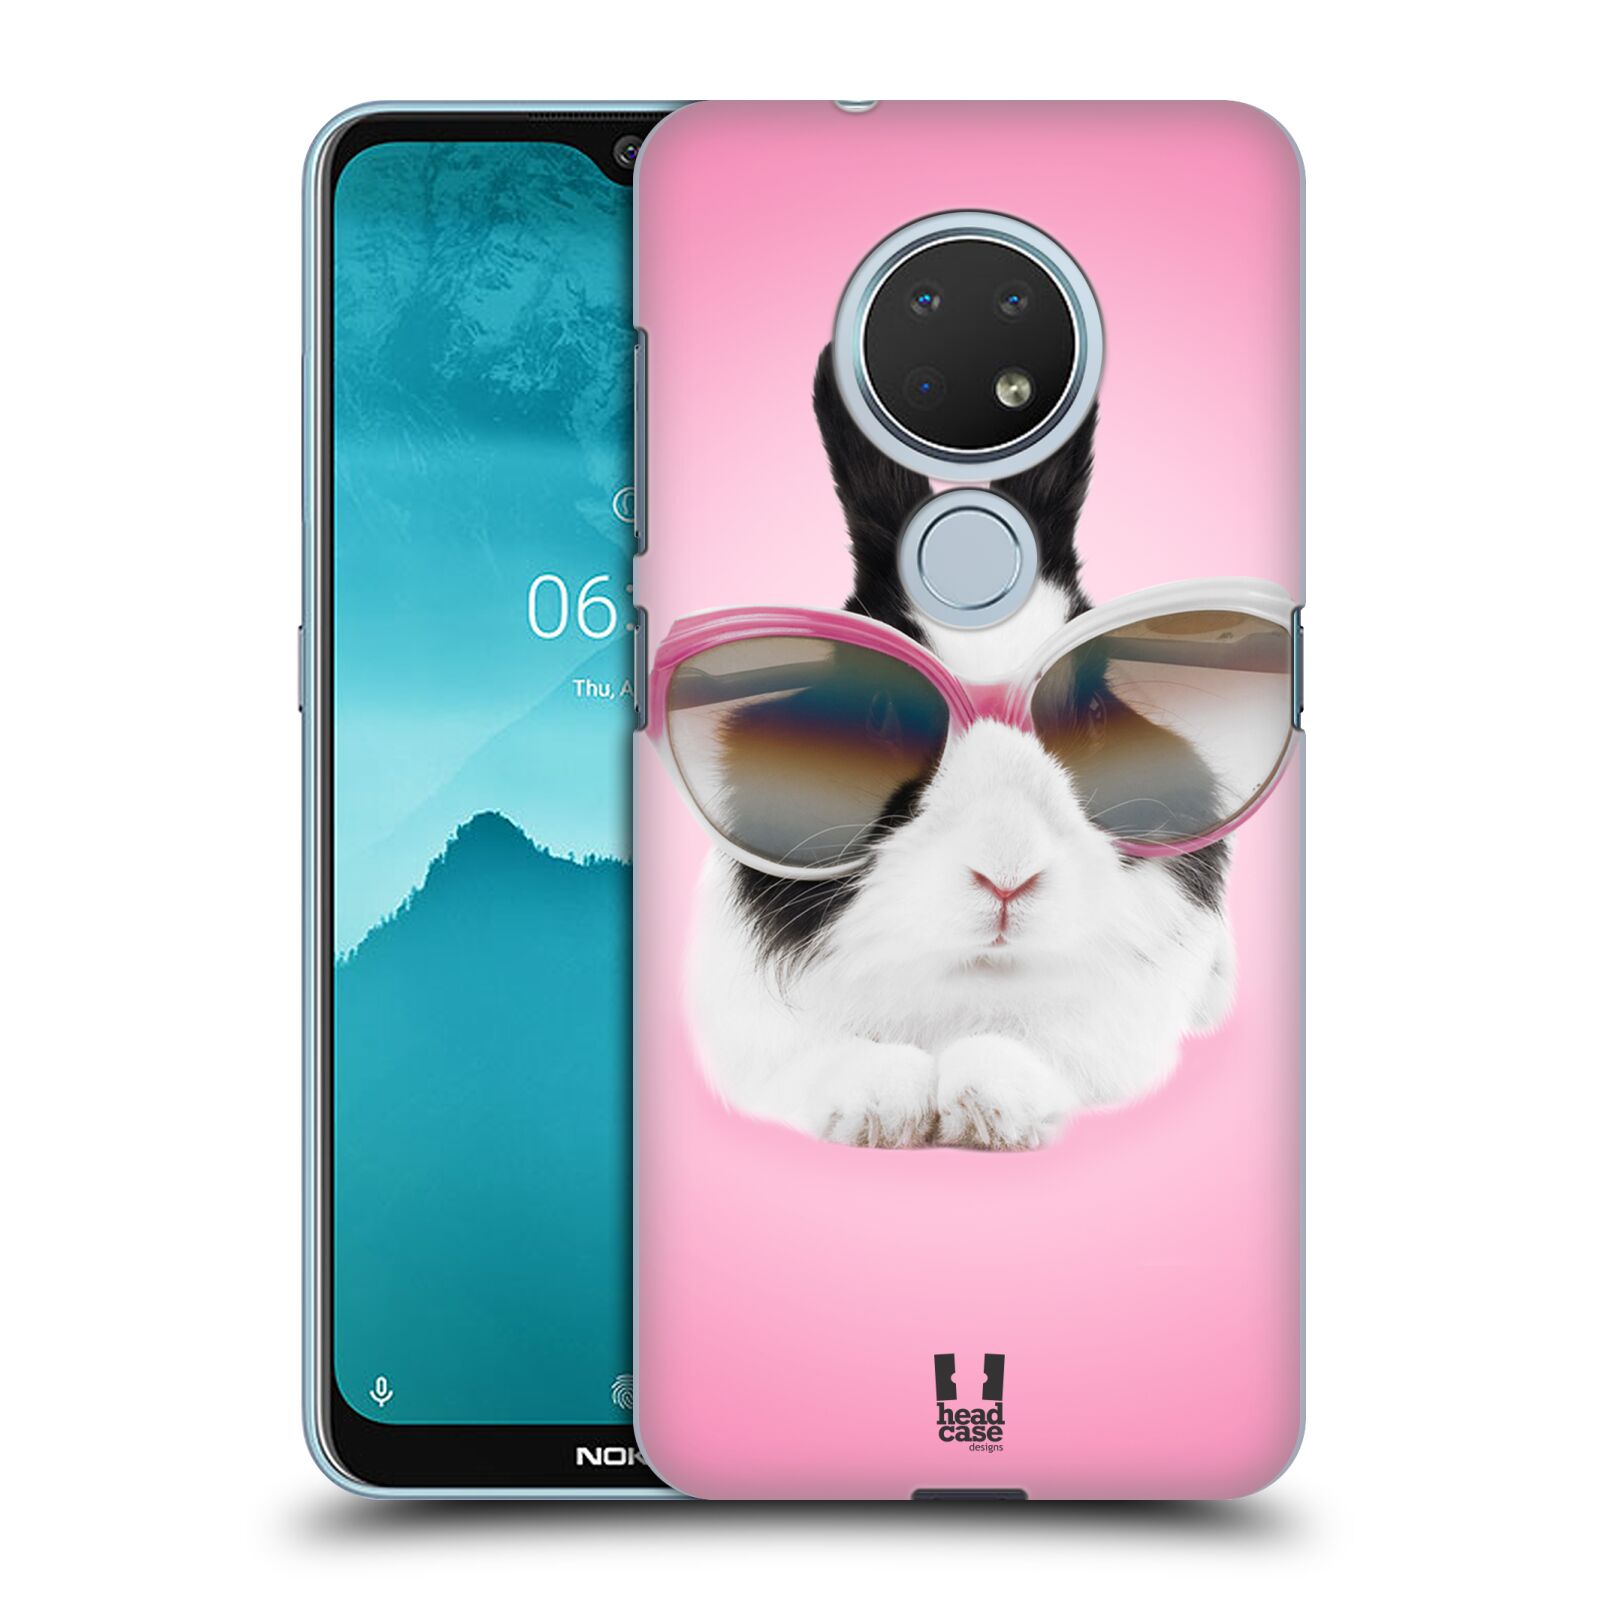 Pouzdro na mobil Nokia 6.2 - HEAD CASE - vzor Legrační zvířátka roztomilý králíček s brýlemi růžová